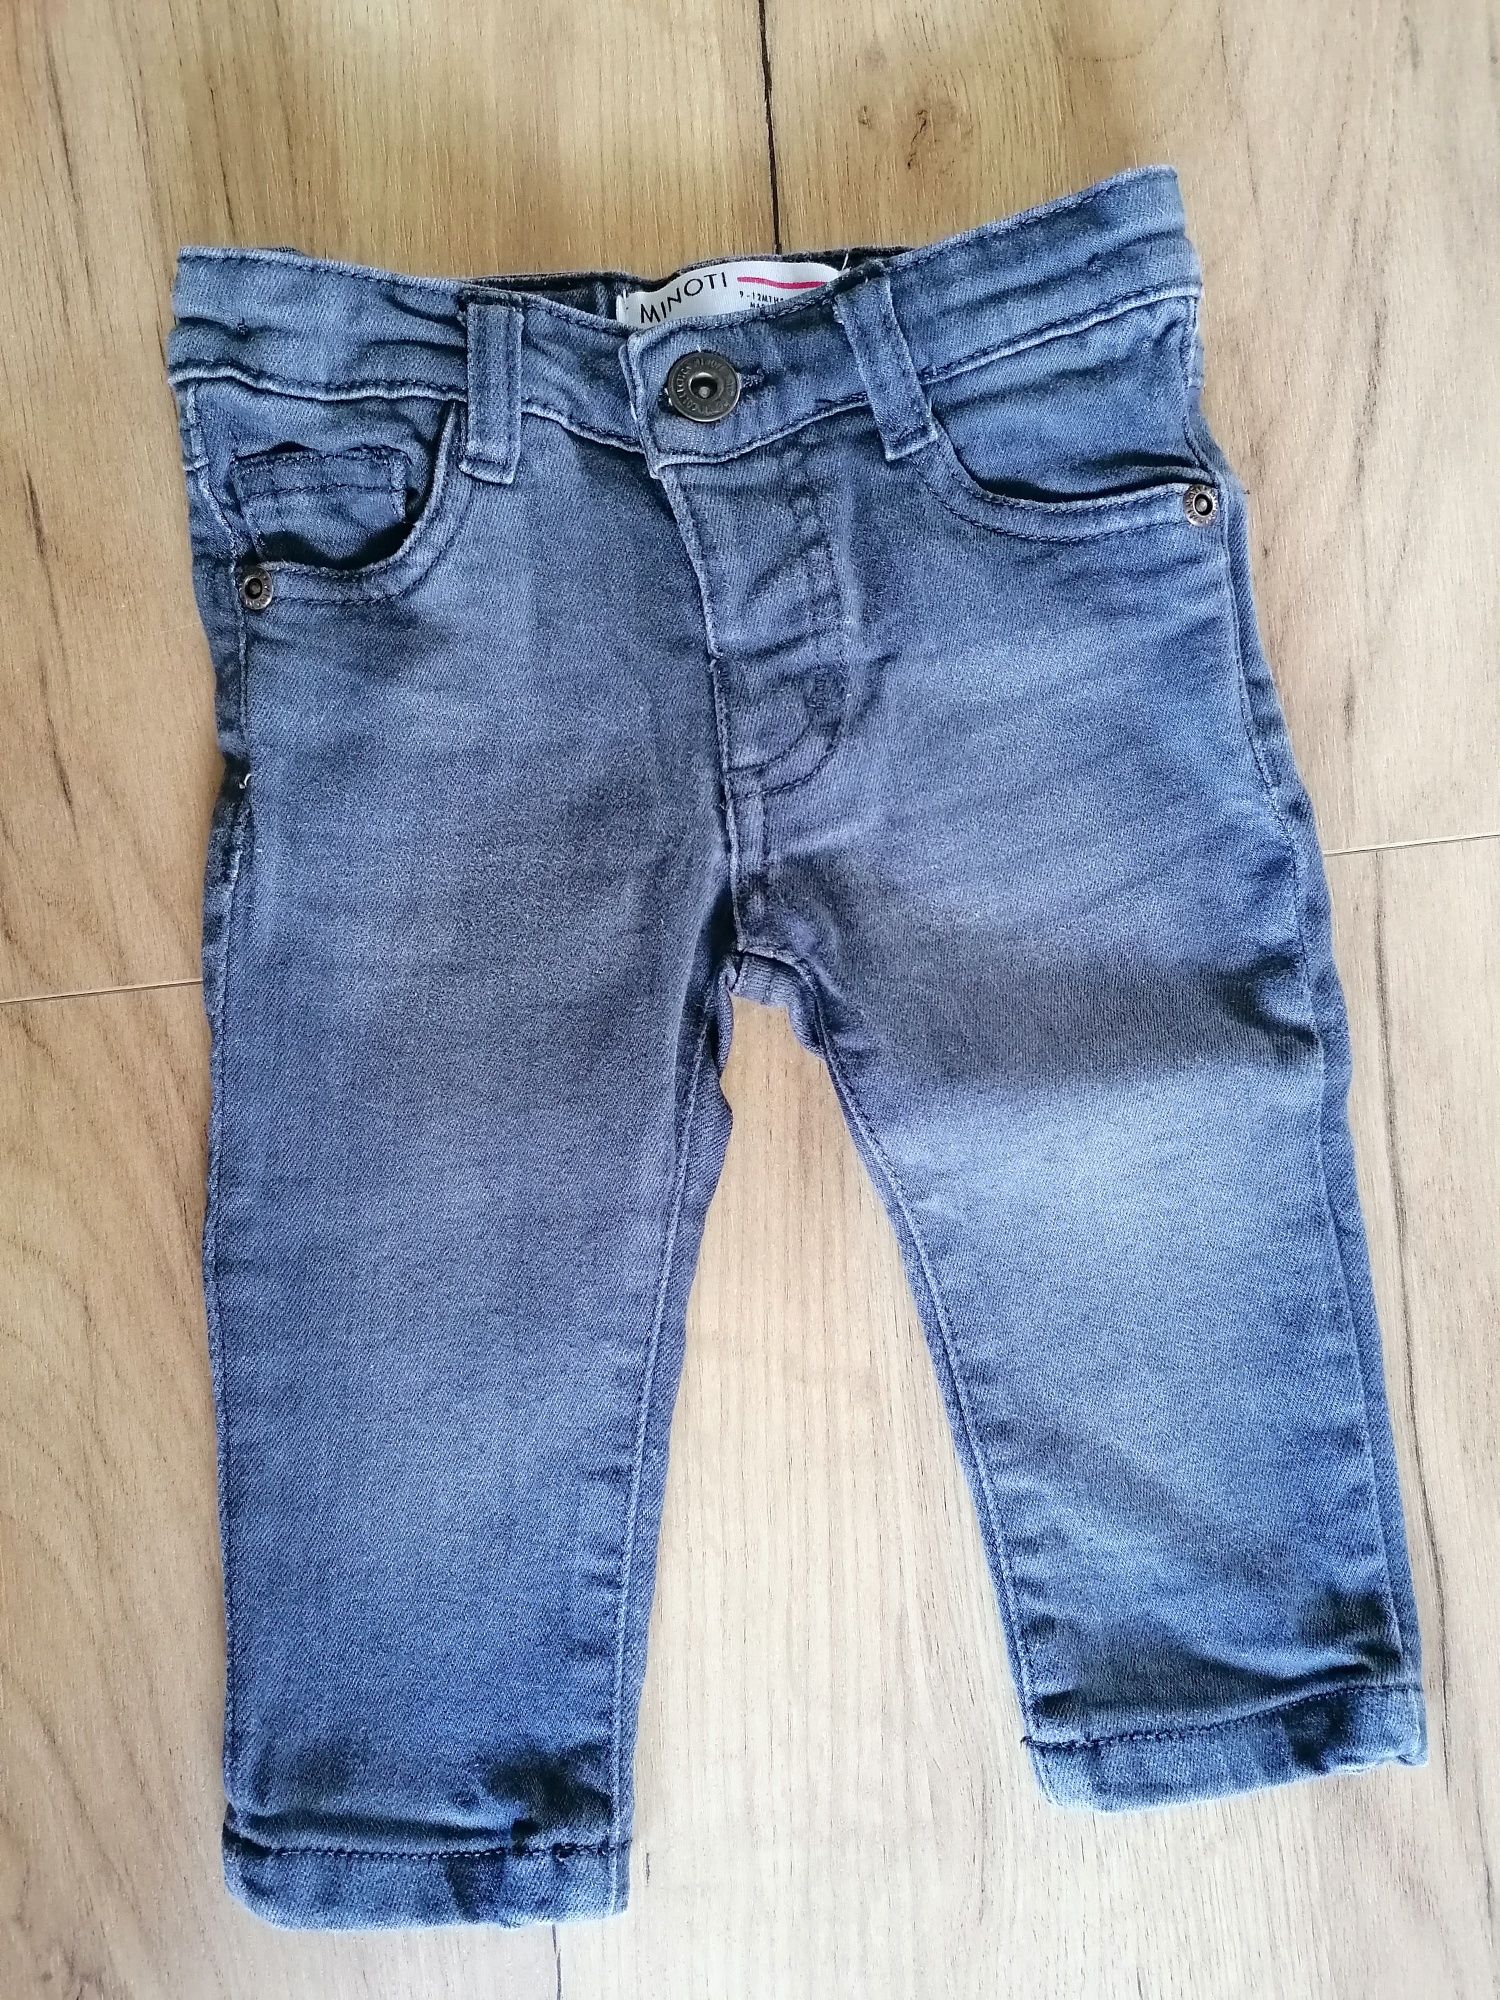 Szare spodnie, jeansy chłopięce, rozmiar 74/80